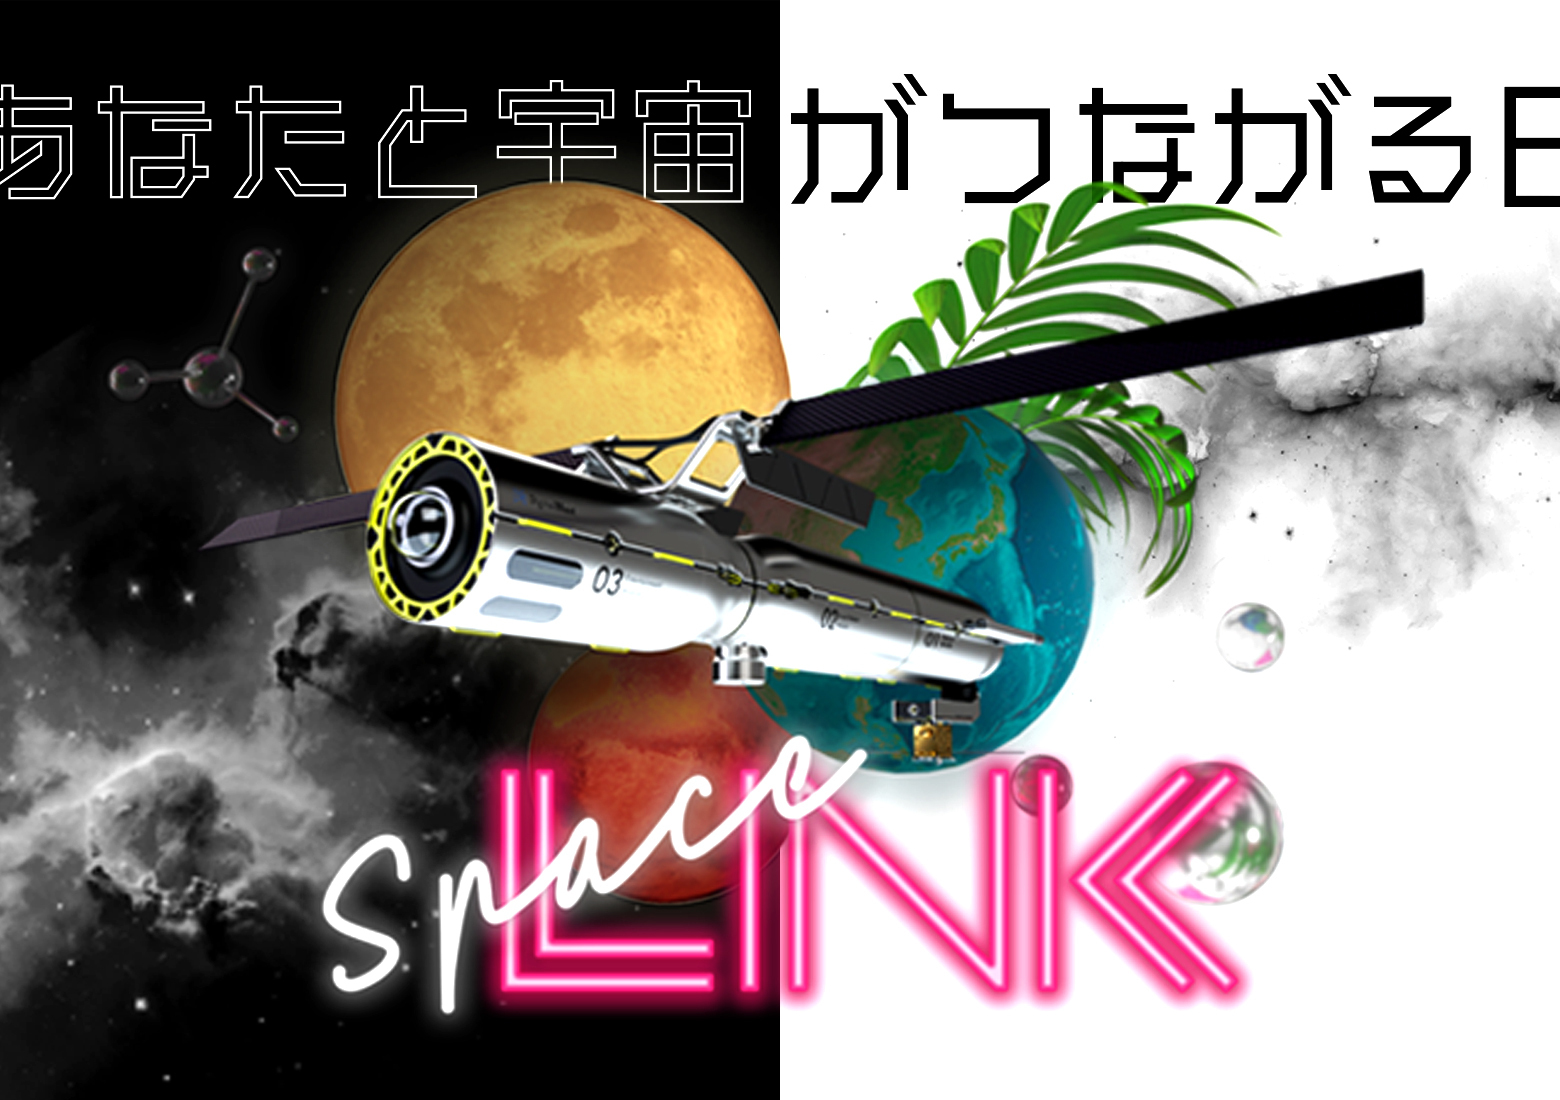 総合宇宙イベント「SpaceLINK」のアーカイブ動画を公開いたしました